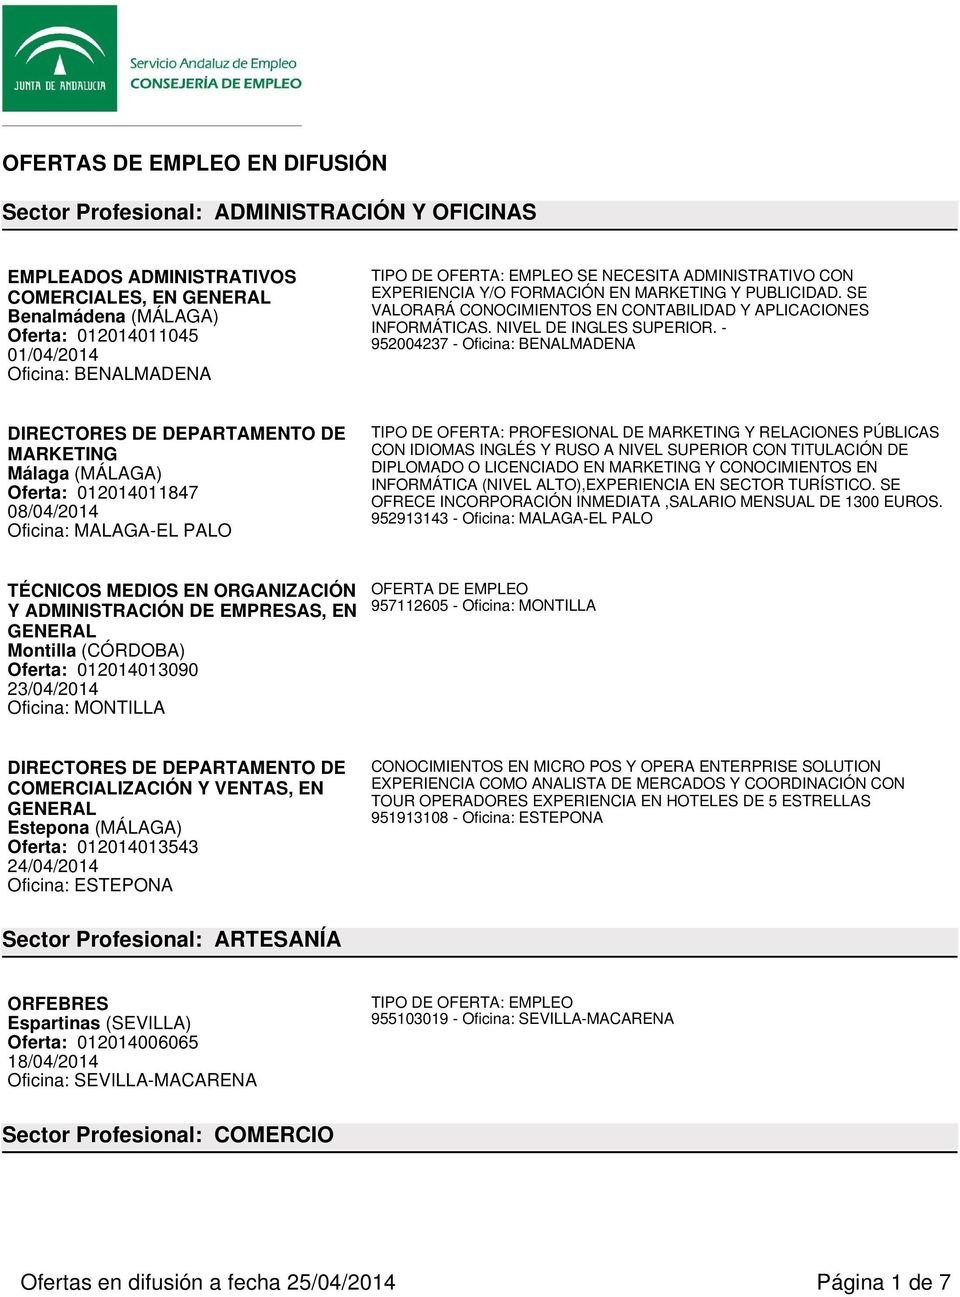 - DIRECTORES DE DEPARTAMENTO DE MARKETING Oferta: 012014011847 08/04/2014 Oficina: MALAGA-EL PALO TIPO DE OFERTA: PROFESIONAL DE MARKETING Y RELACIONES PÚBLICAS CON IDIOMAS INGLÉS Y RUSO A NIVEL